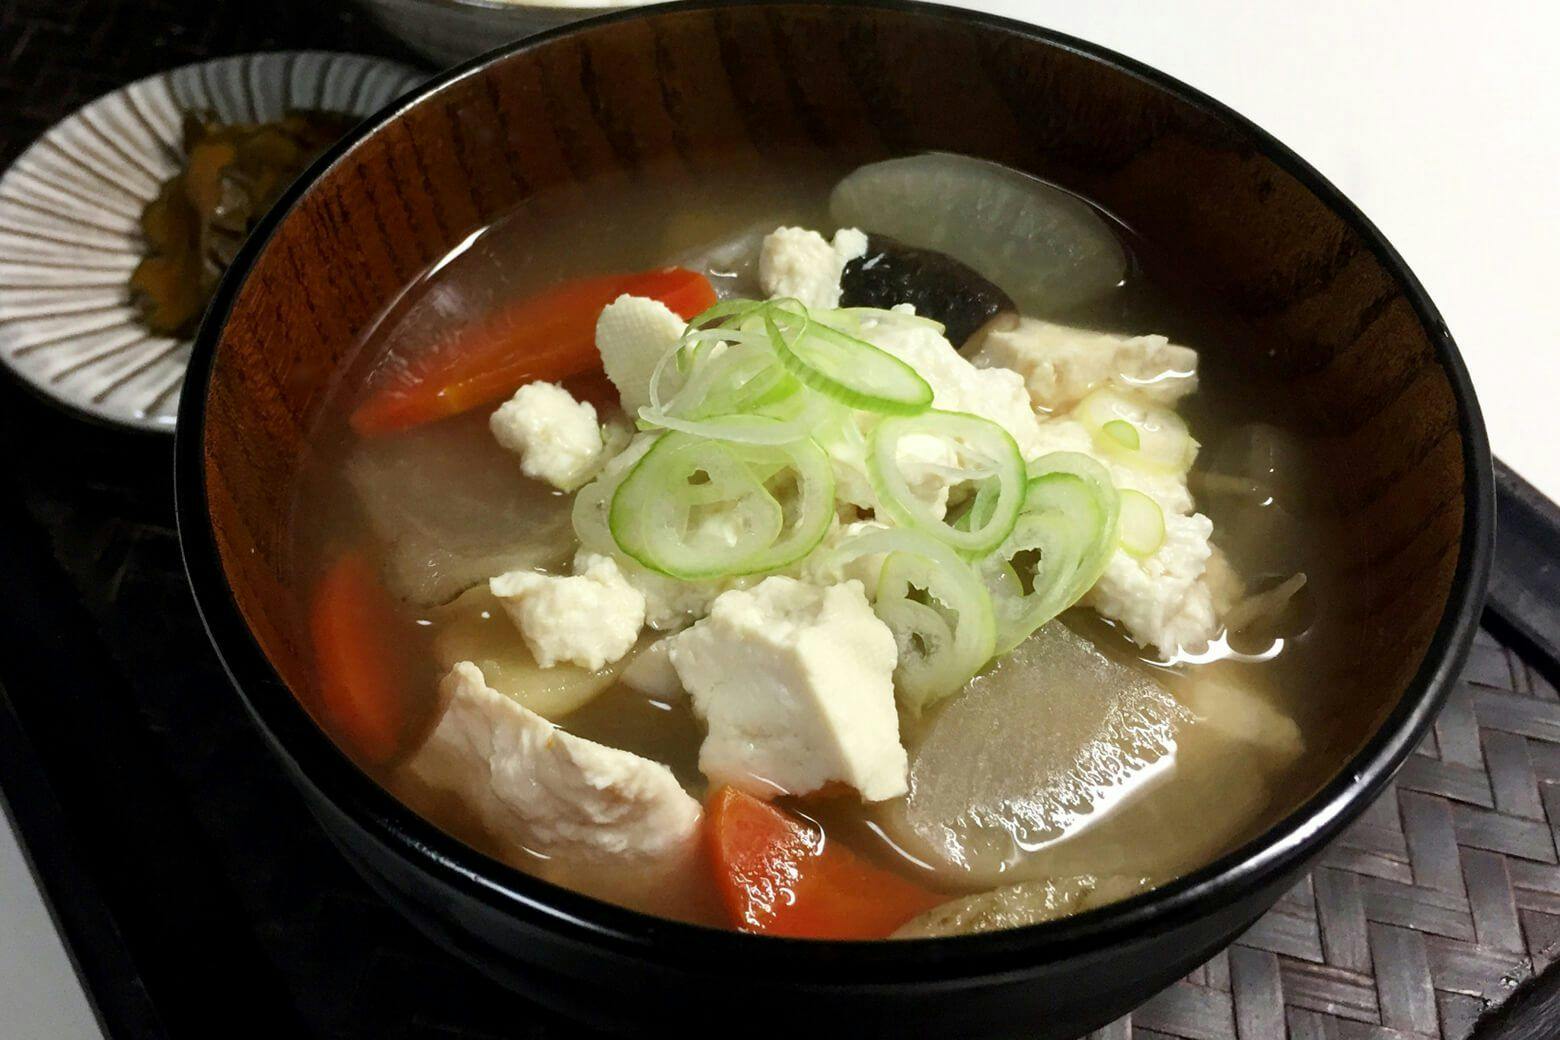 Kenchin soup